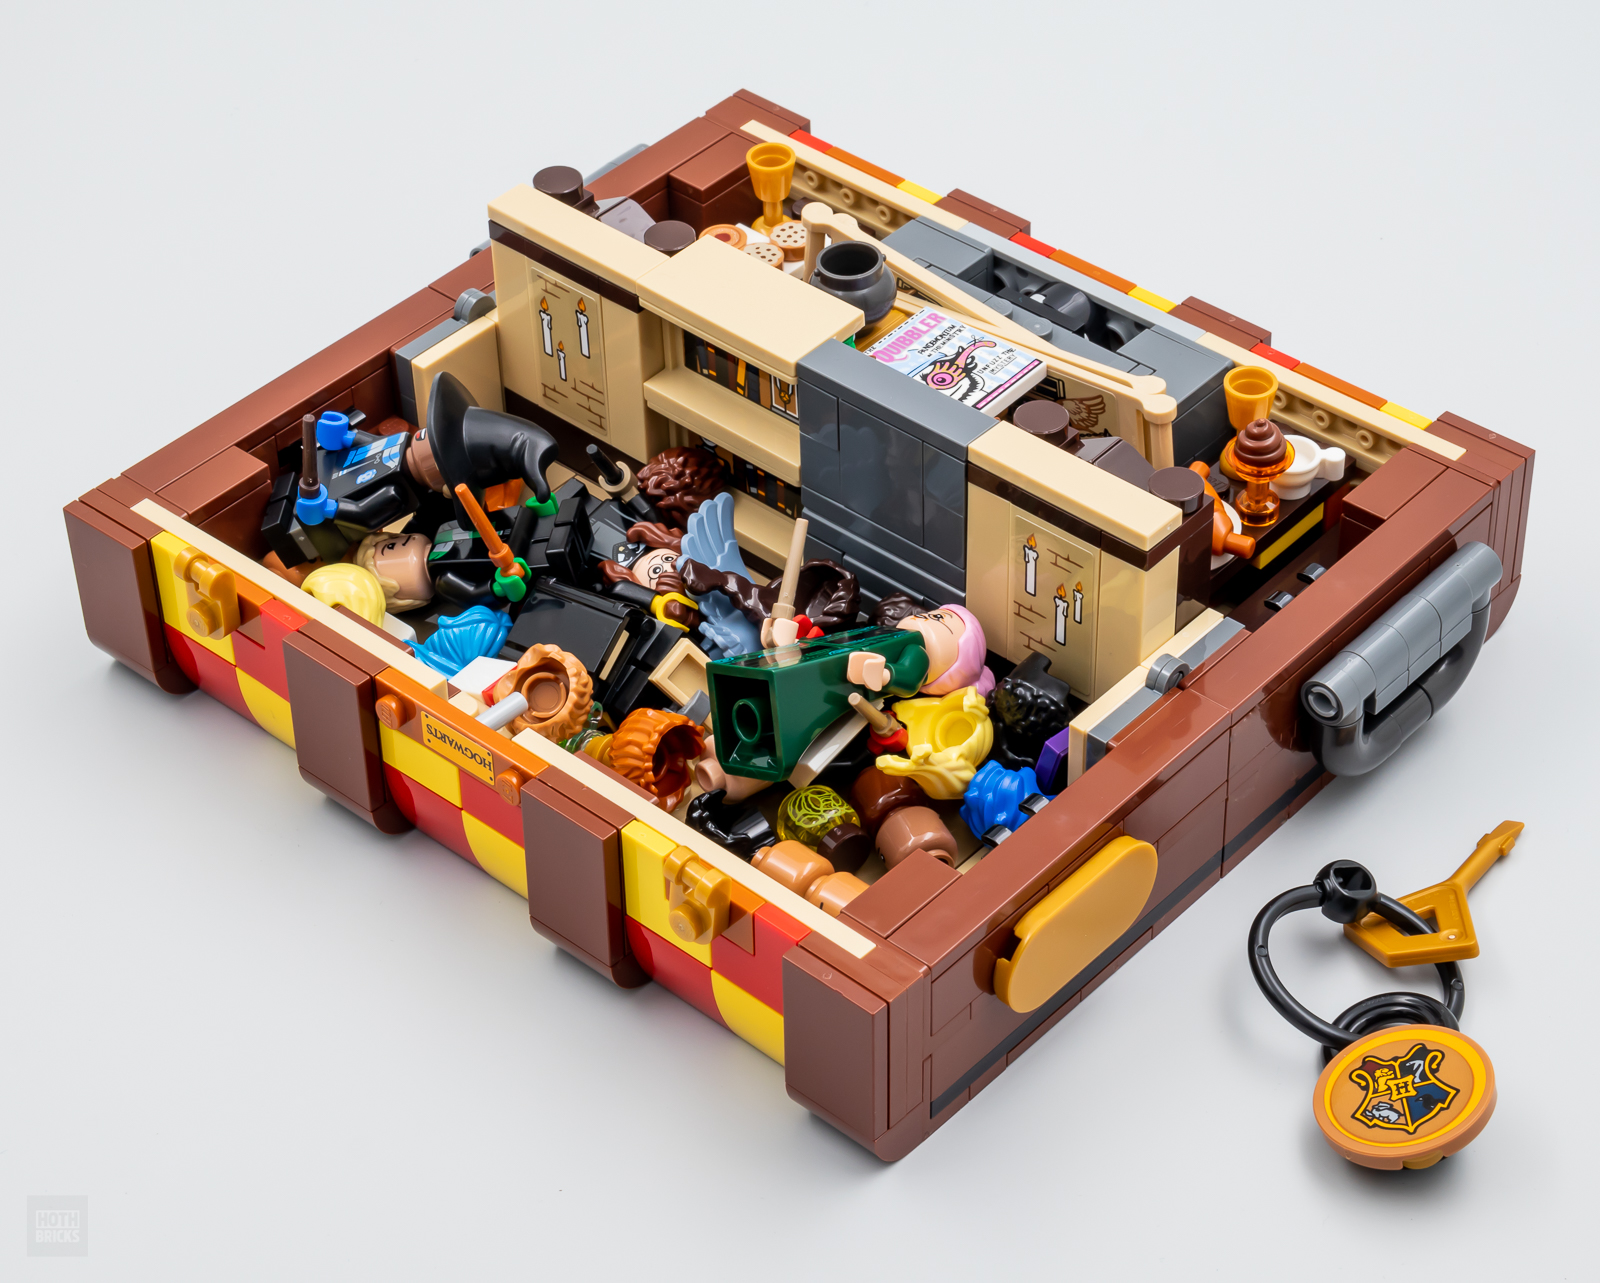 LEGO Harry Potter La malle magique de Poudlard - 603 pièces